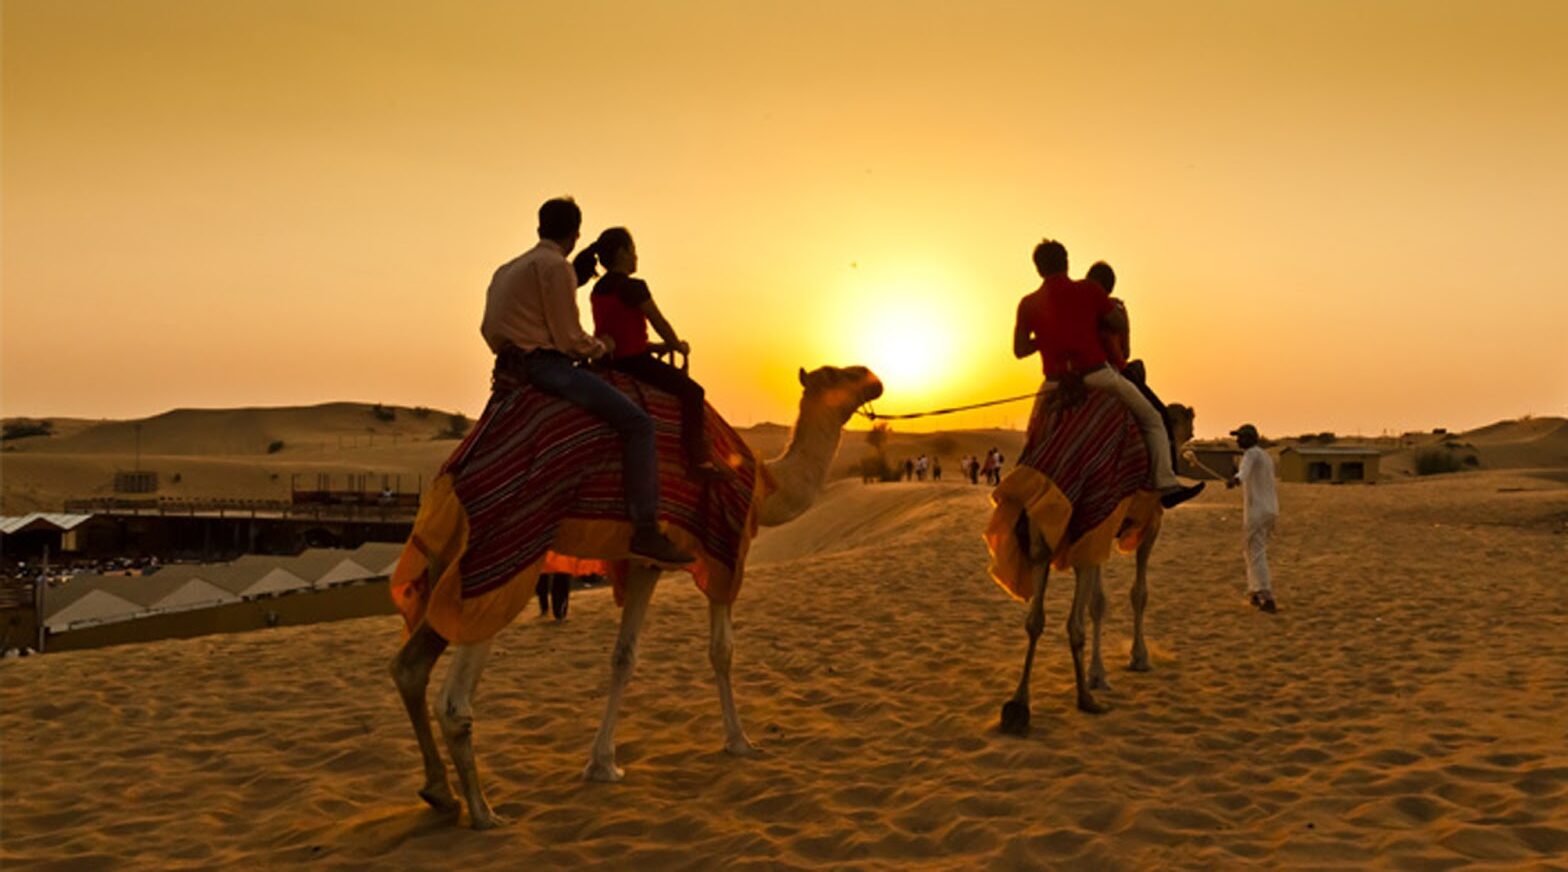 MORNING DESERT SAFARI